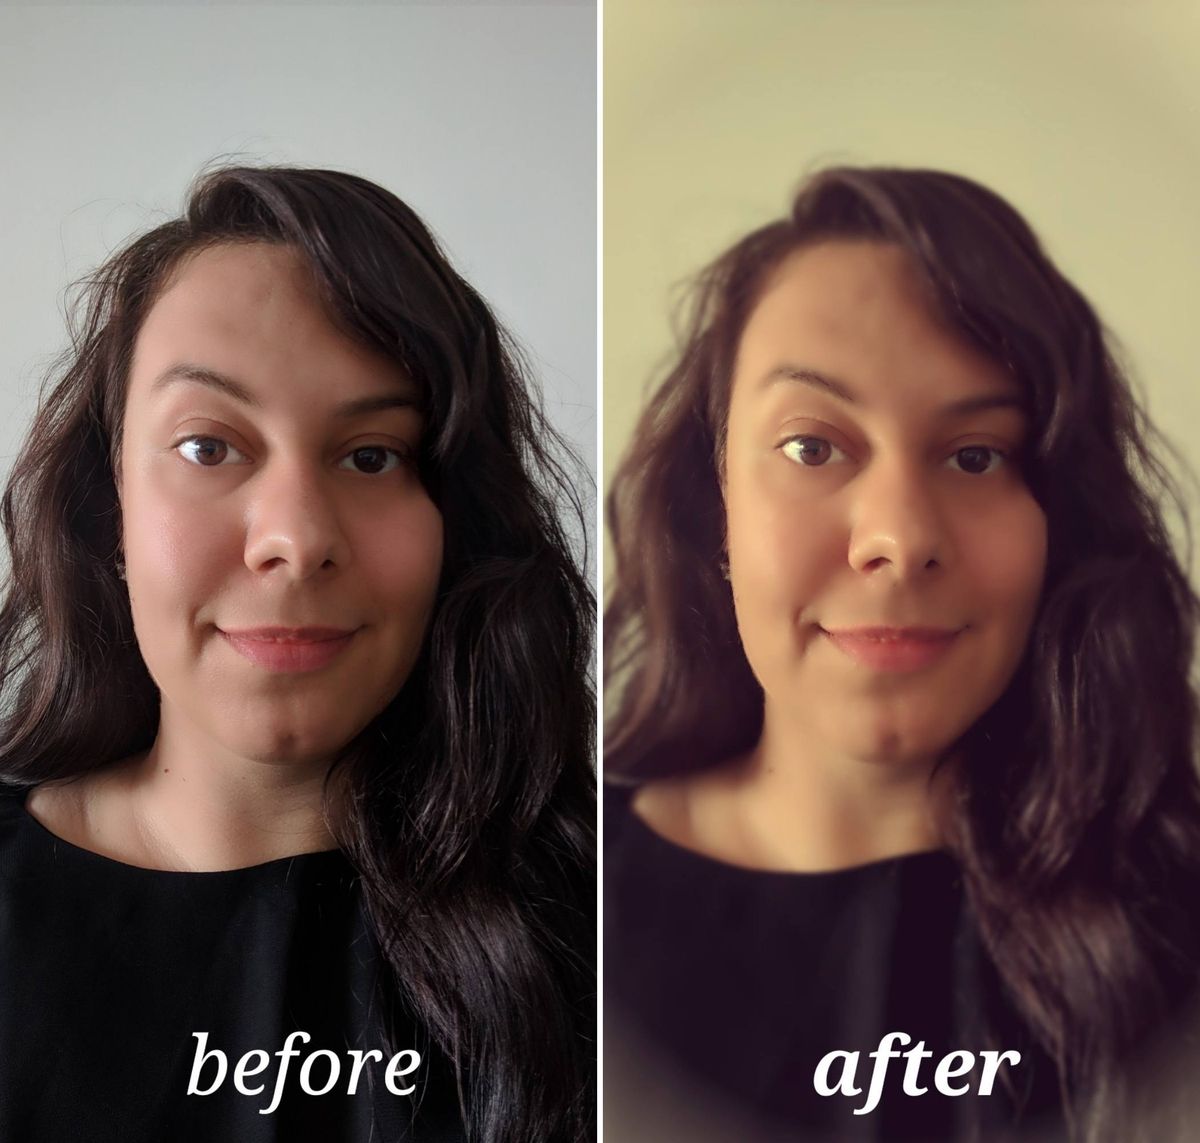 Pixlr pirms un pēc rediģēšanas